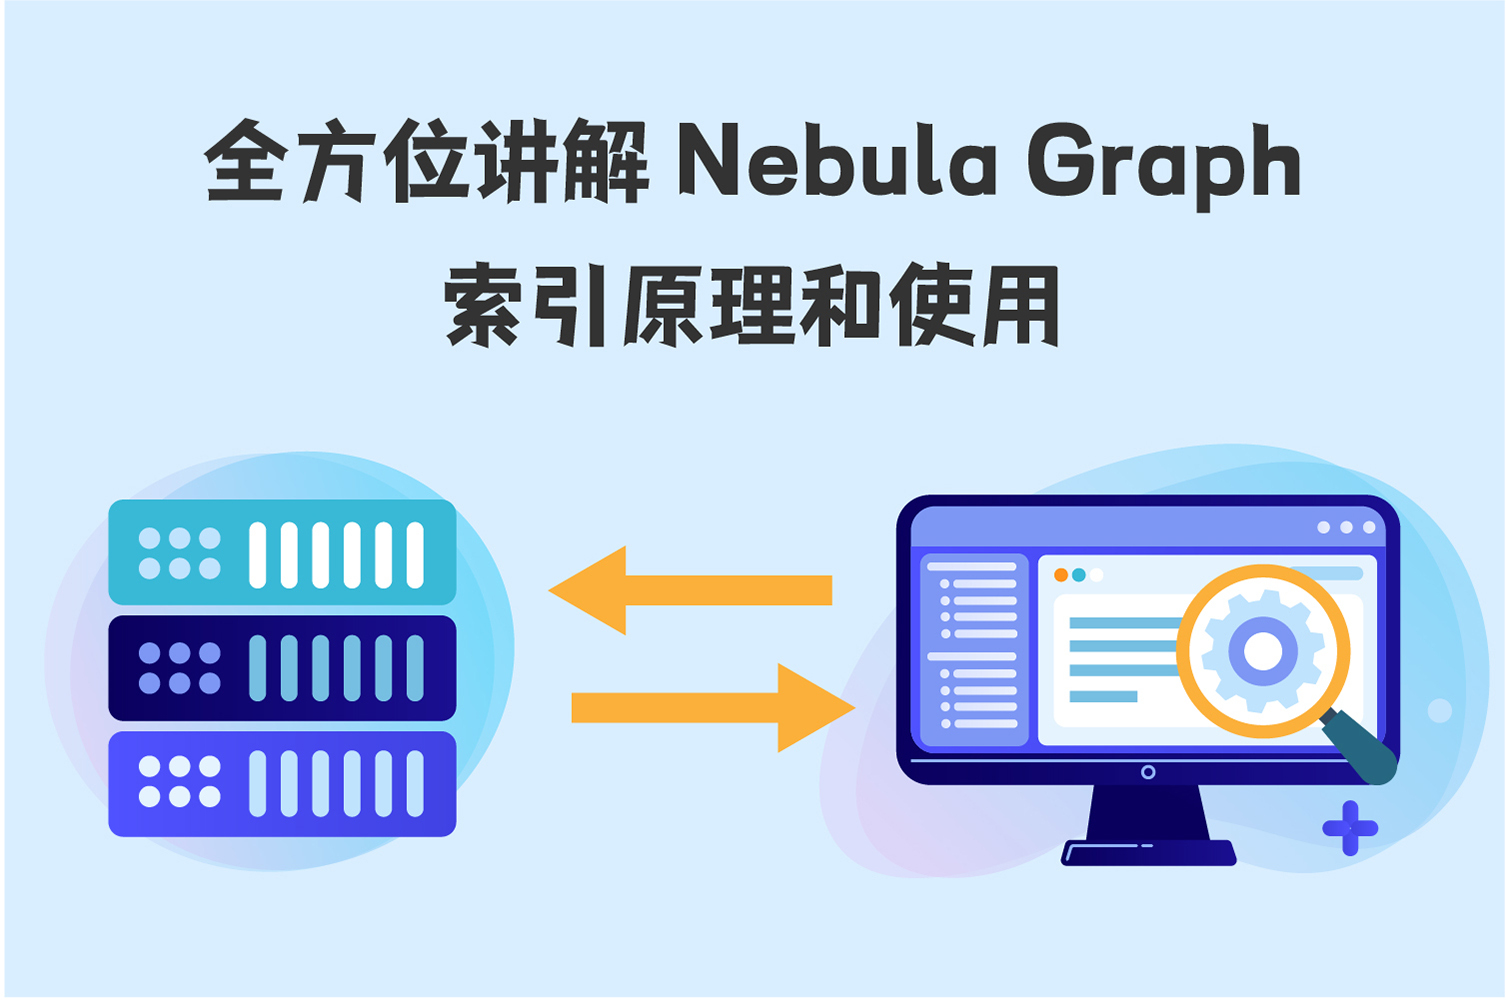 全方位讲解 Nebula Graph 索引原理和使用